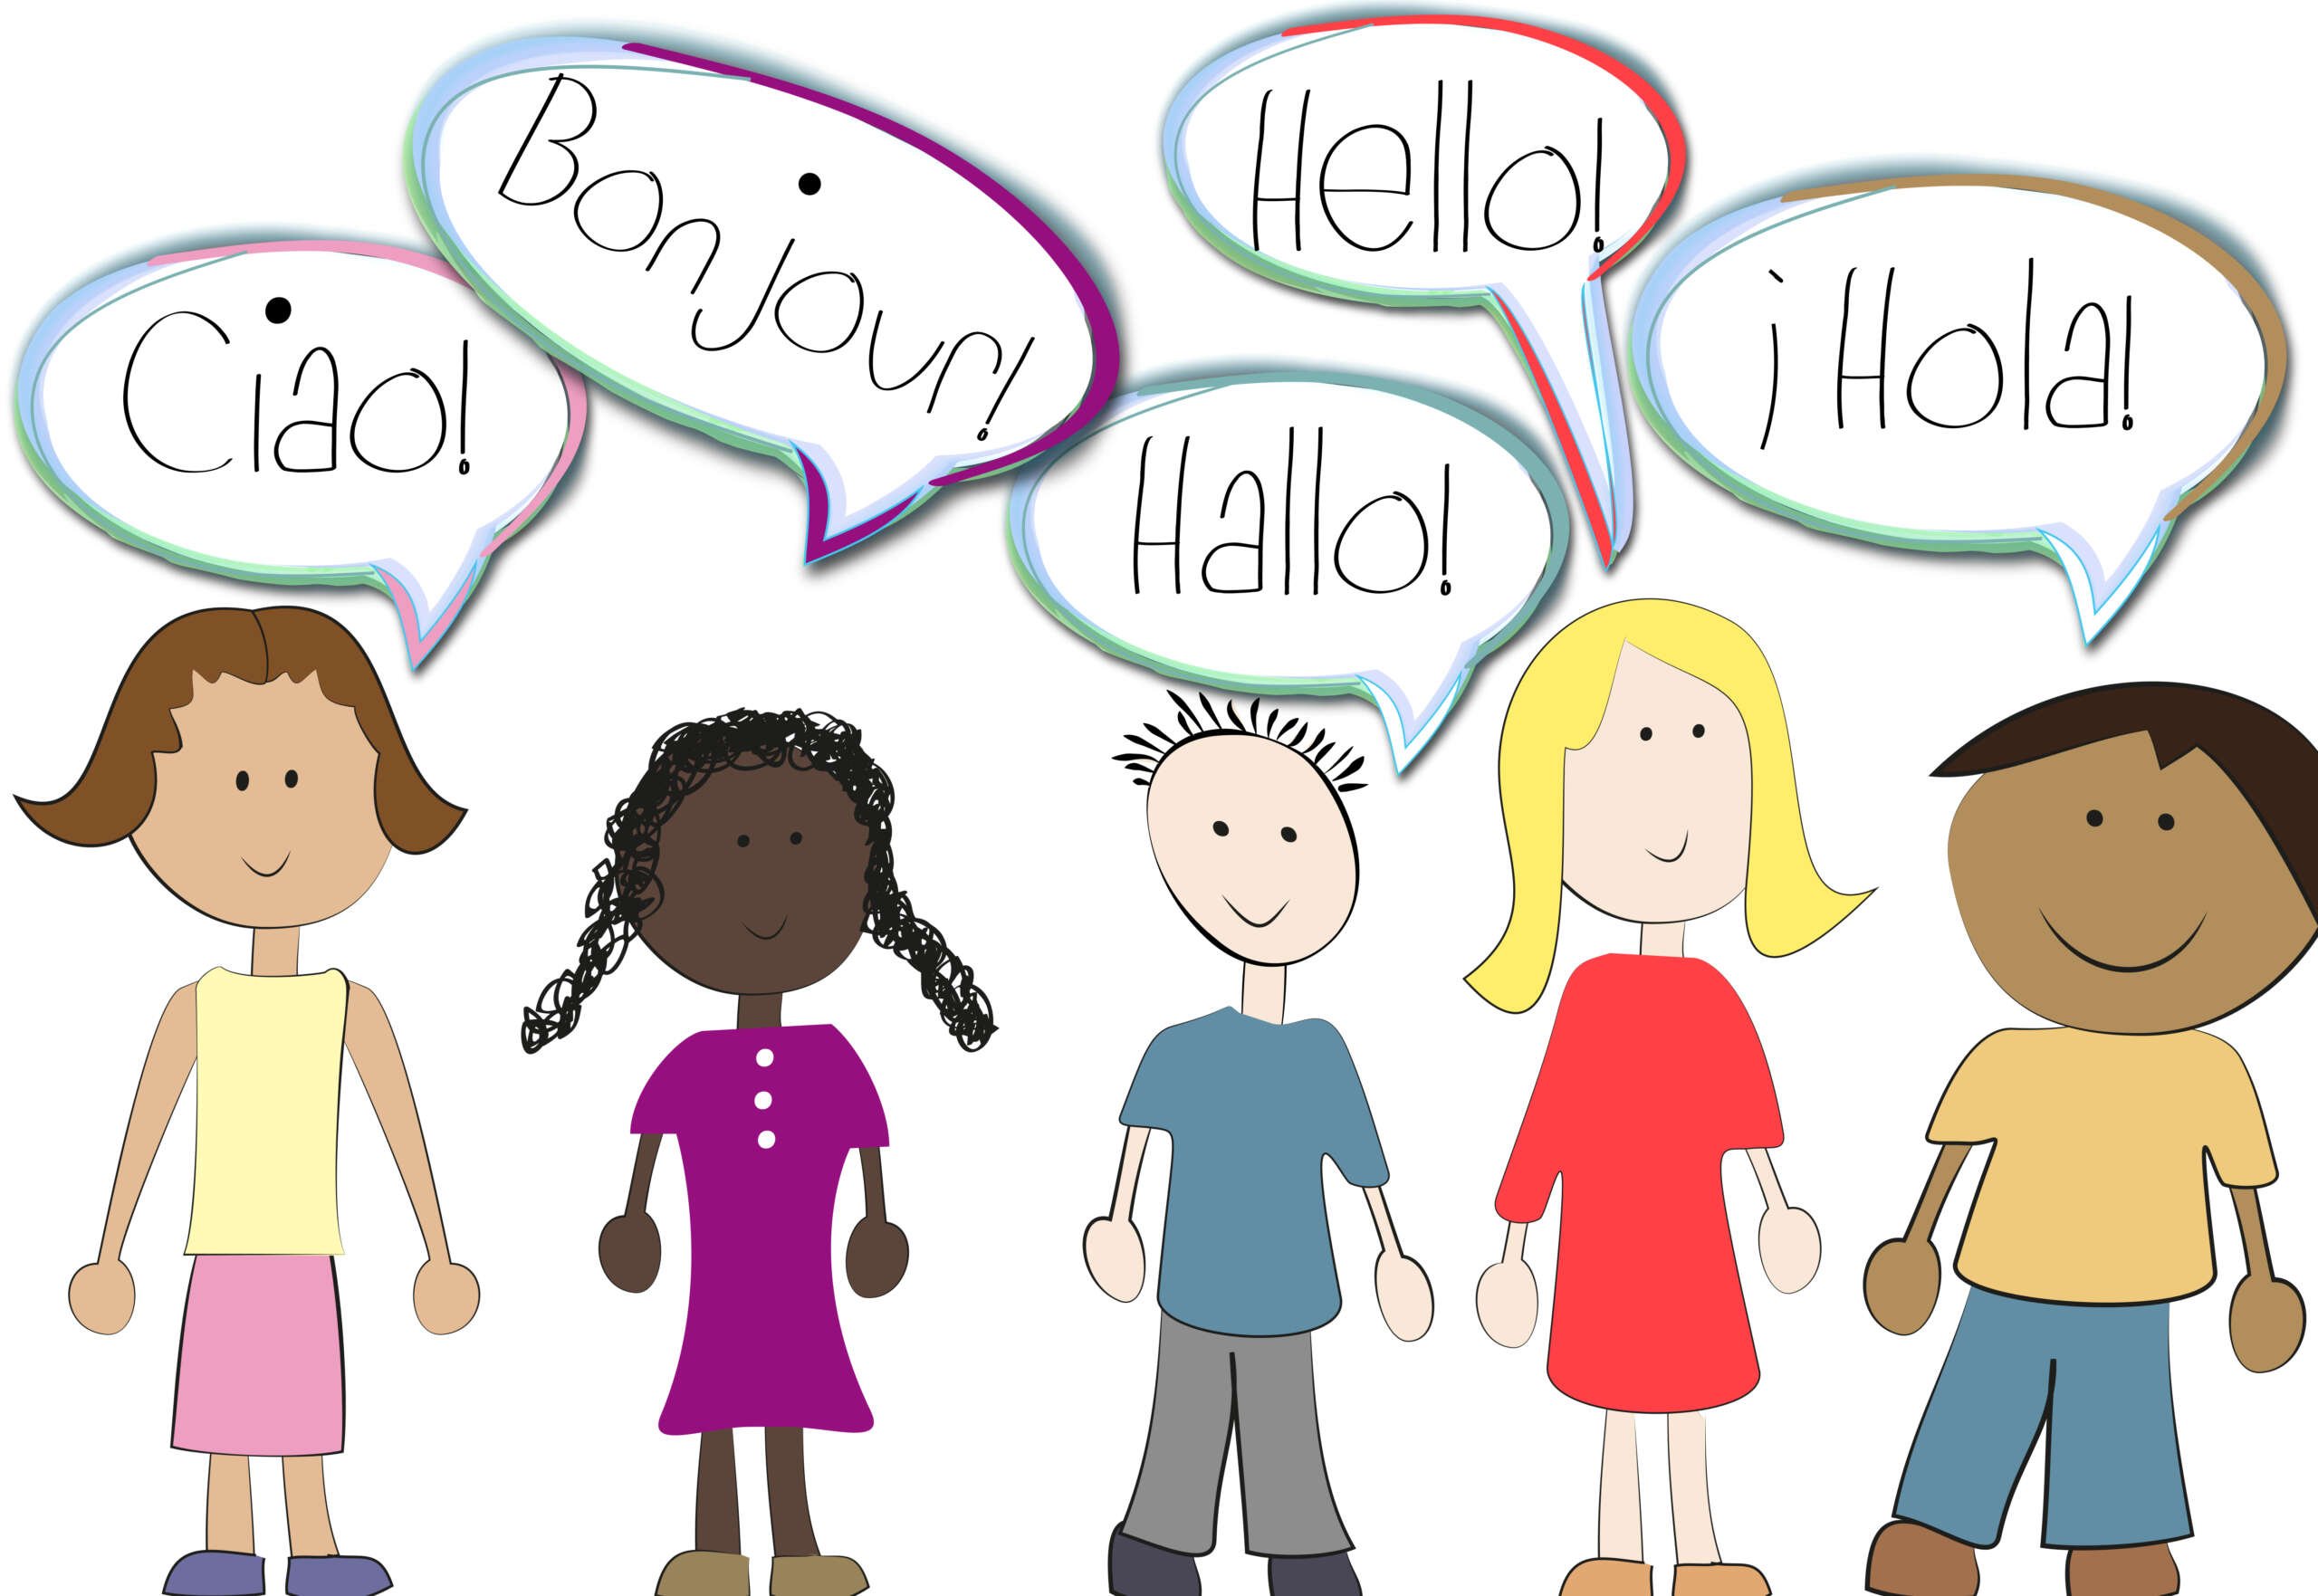 Cartoon learn english. Дети Билингвы. Люди говорящие на разных языках иллюстрация. Люди говорящие на разных языках. Общение на разных языках.